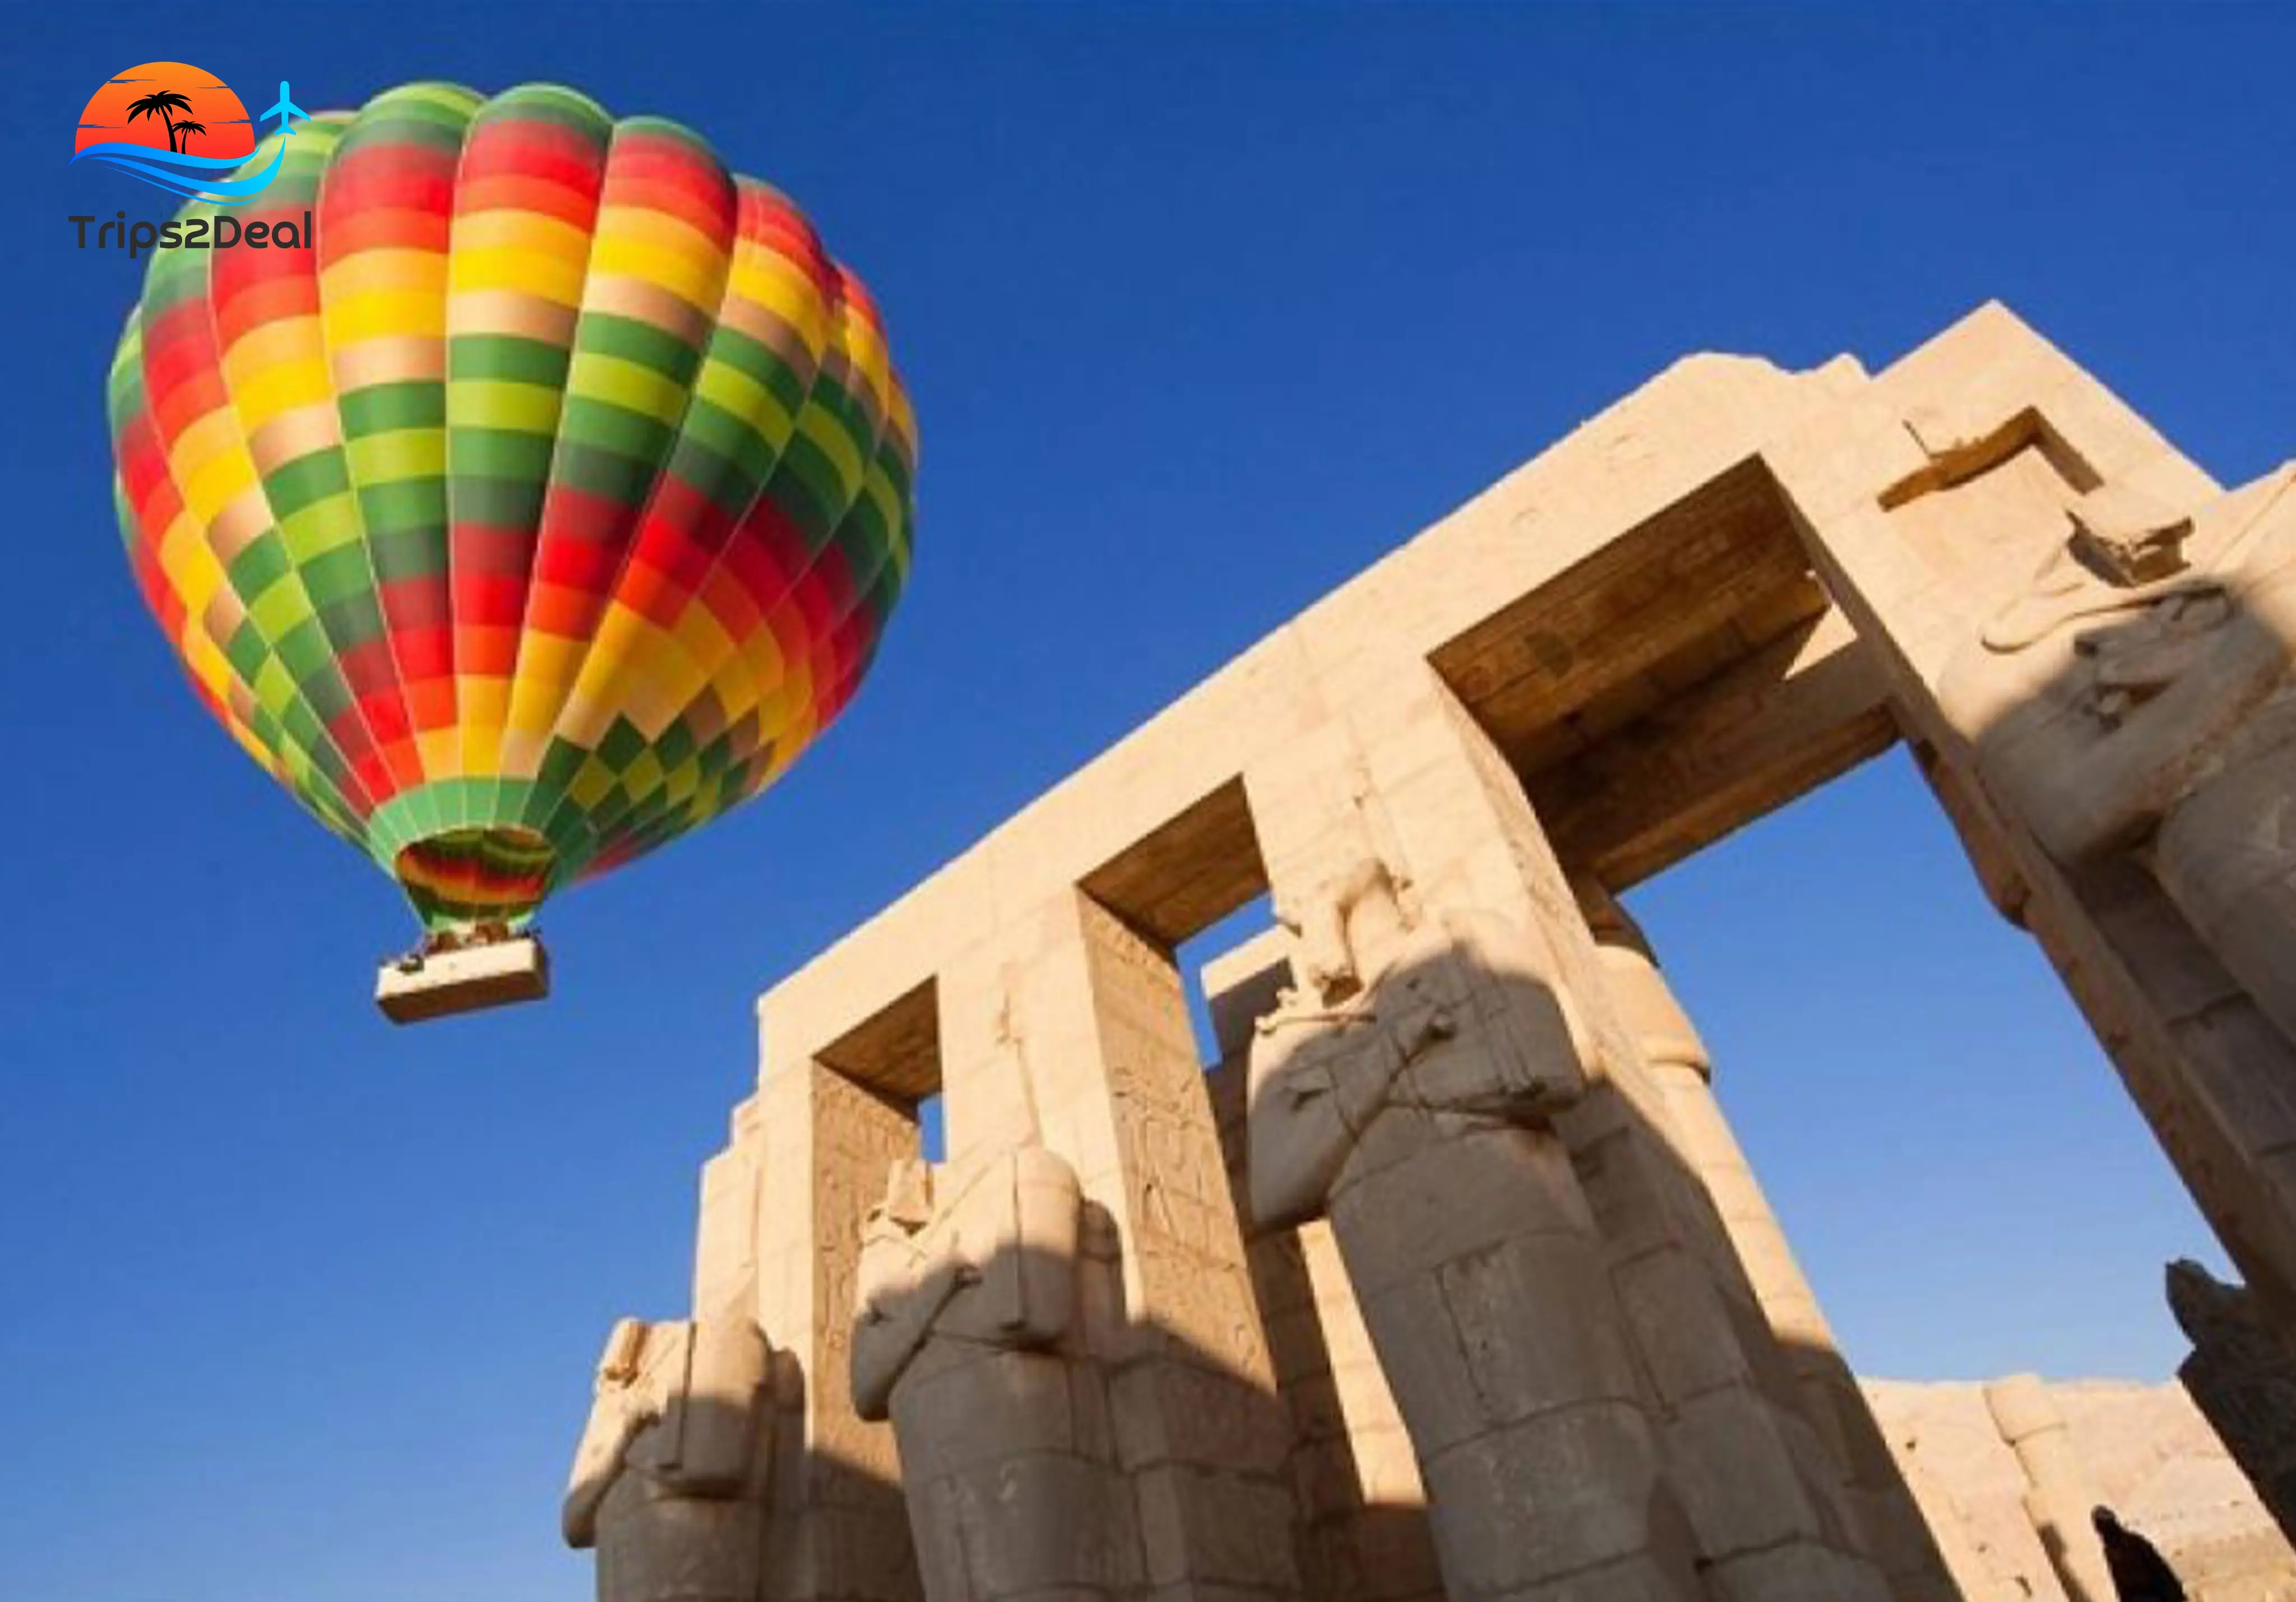 A hot air balloon ride in Luxor